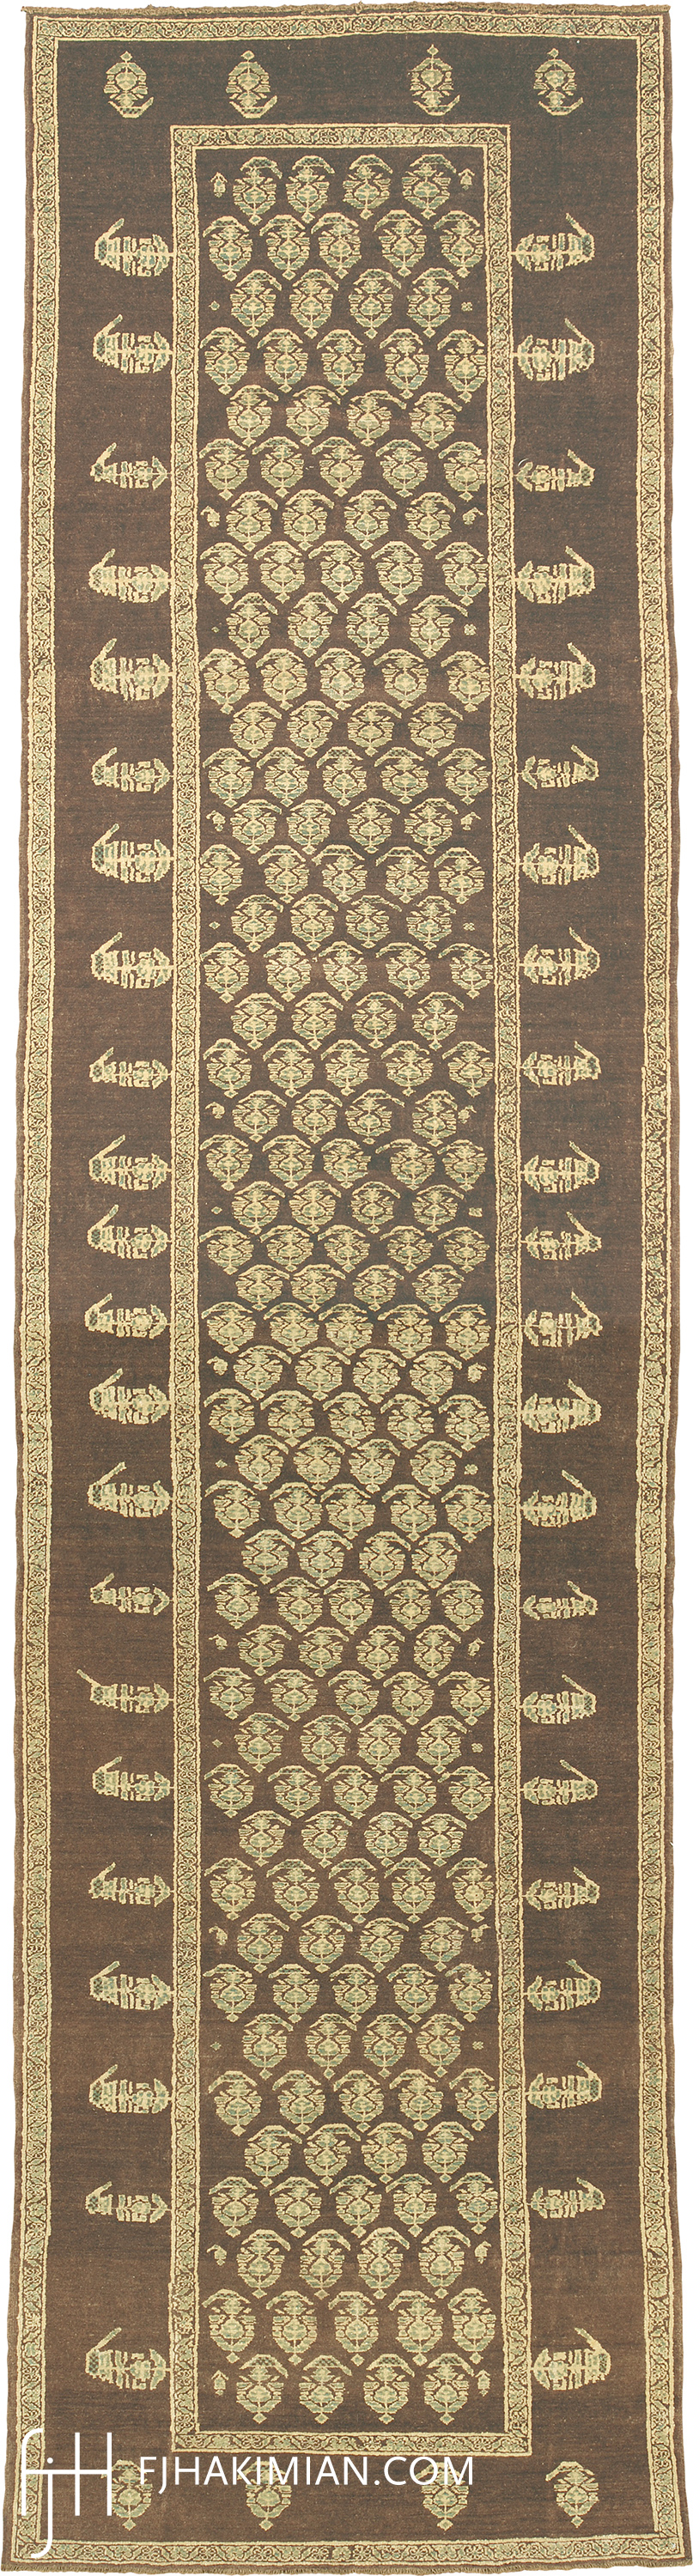 Custom Bakshaish Design | FJ Hakimian | Carpet Gallery in NY